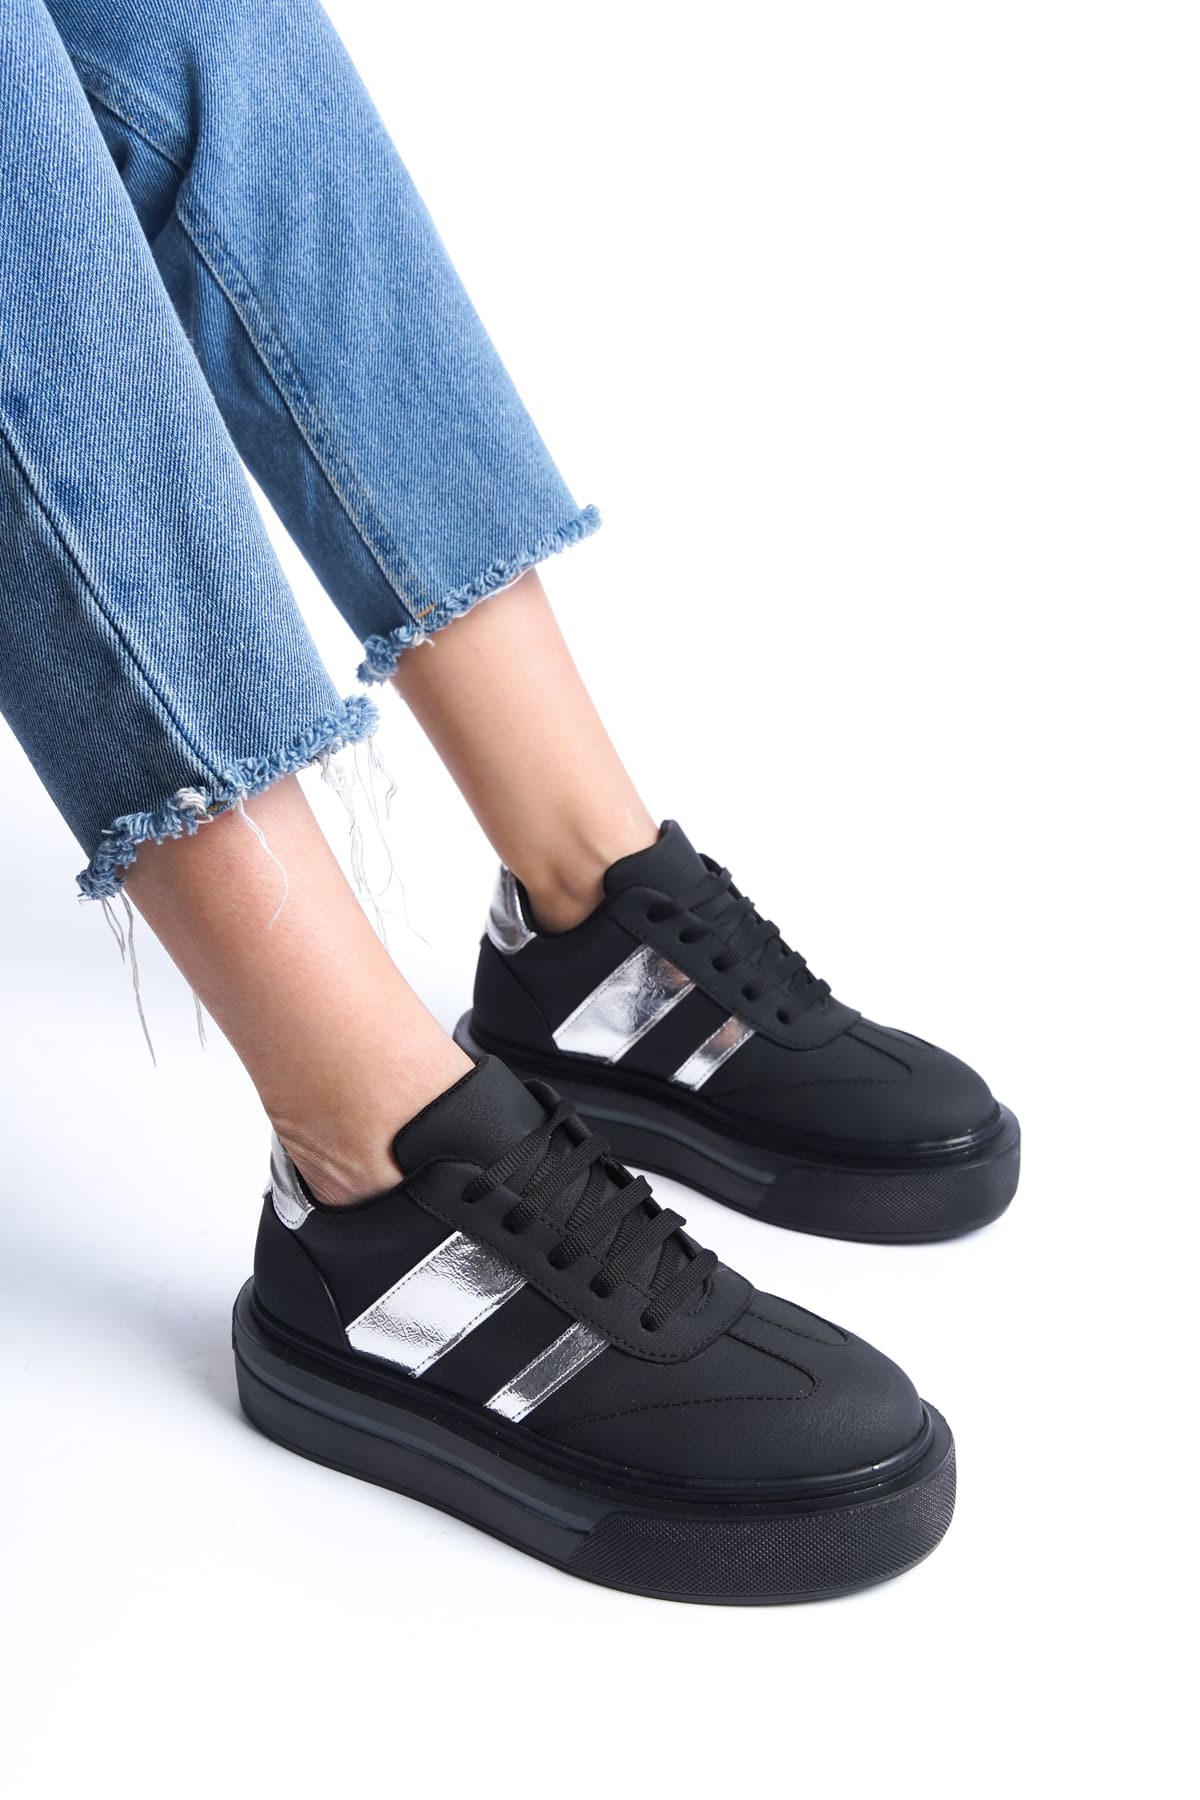 DIAS Bağcıklı Ortopedik Taban Kadın Sneaker Ayakkabı  Siyah/Gümüş